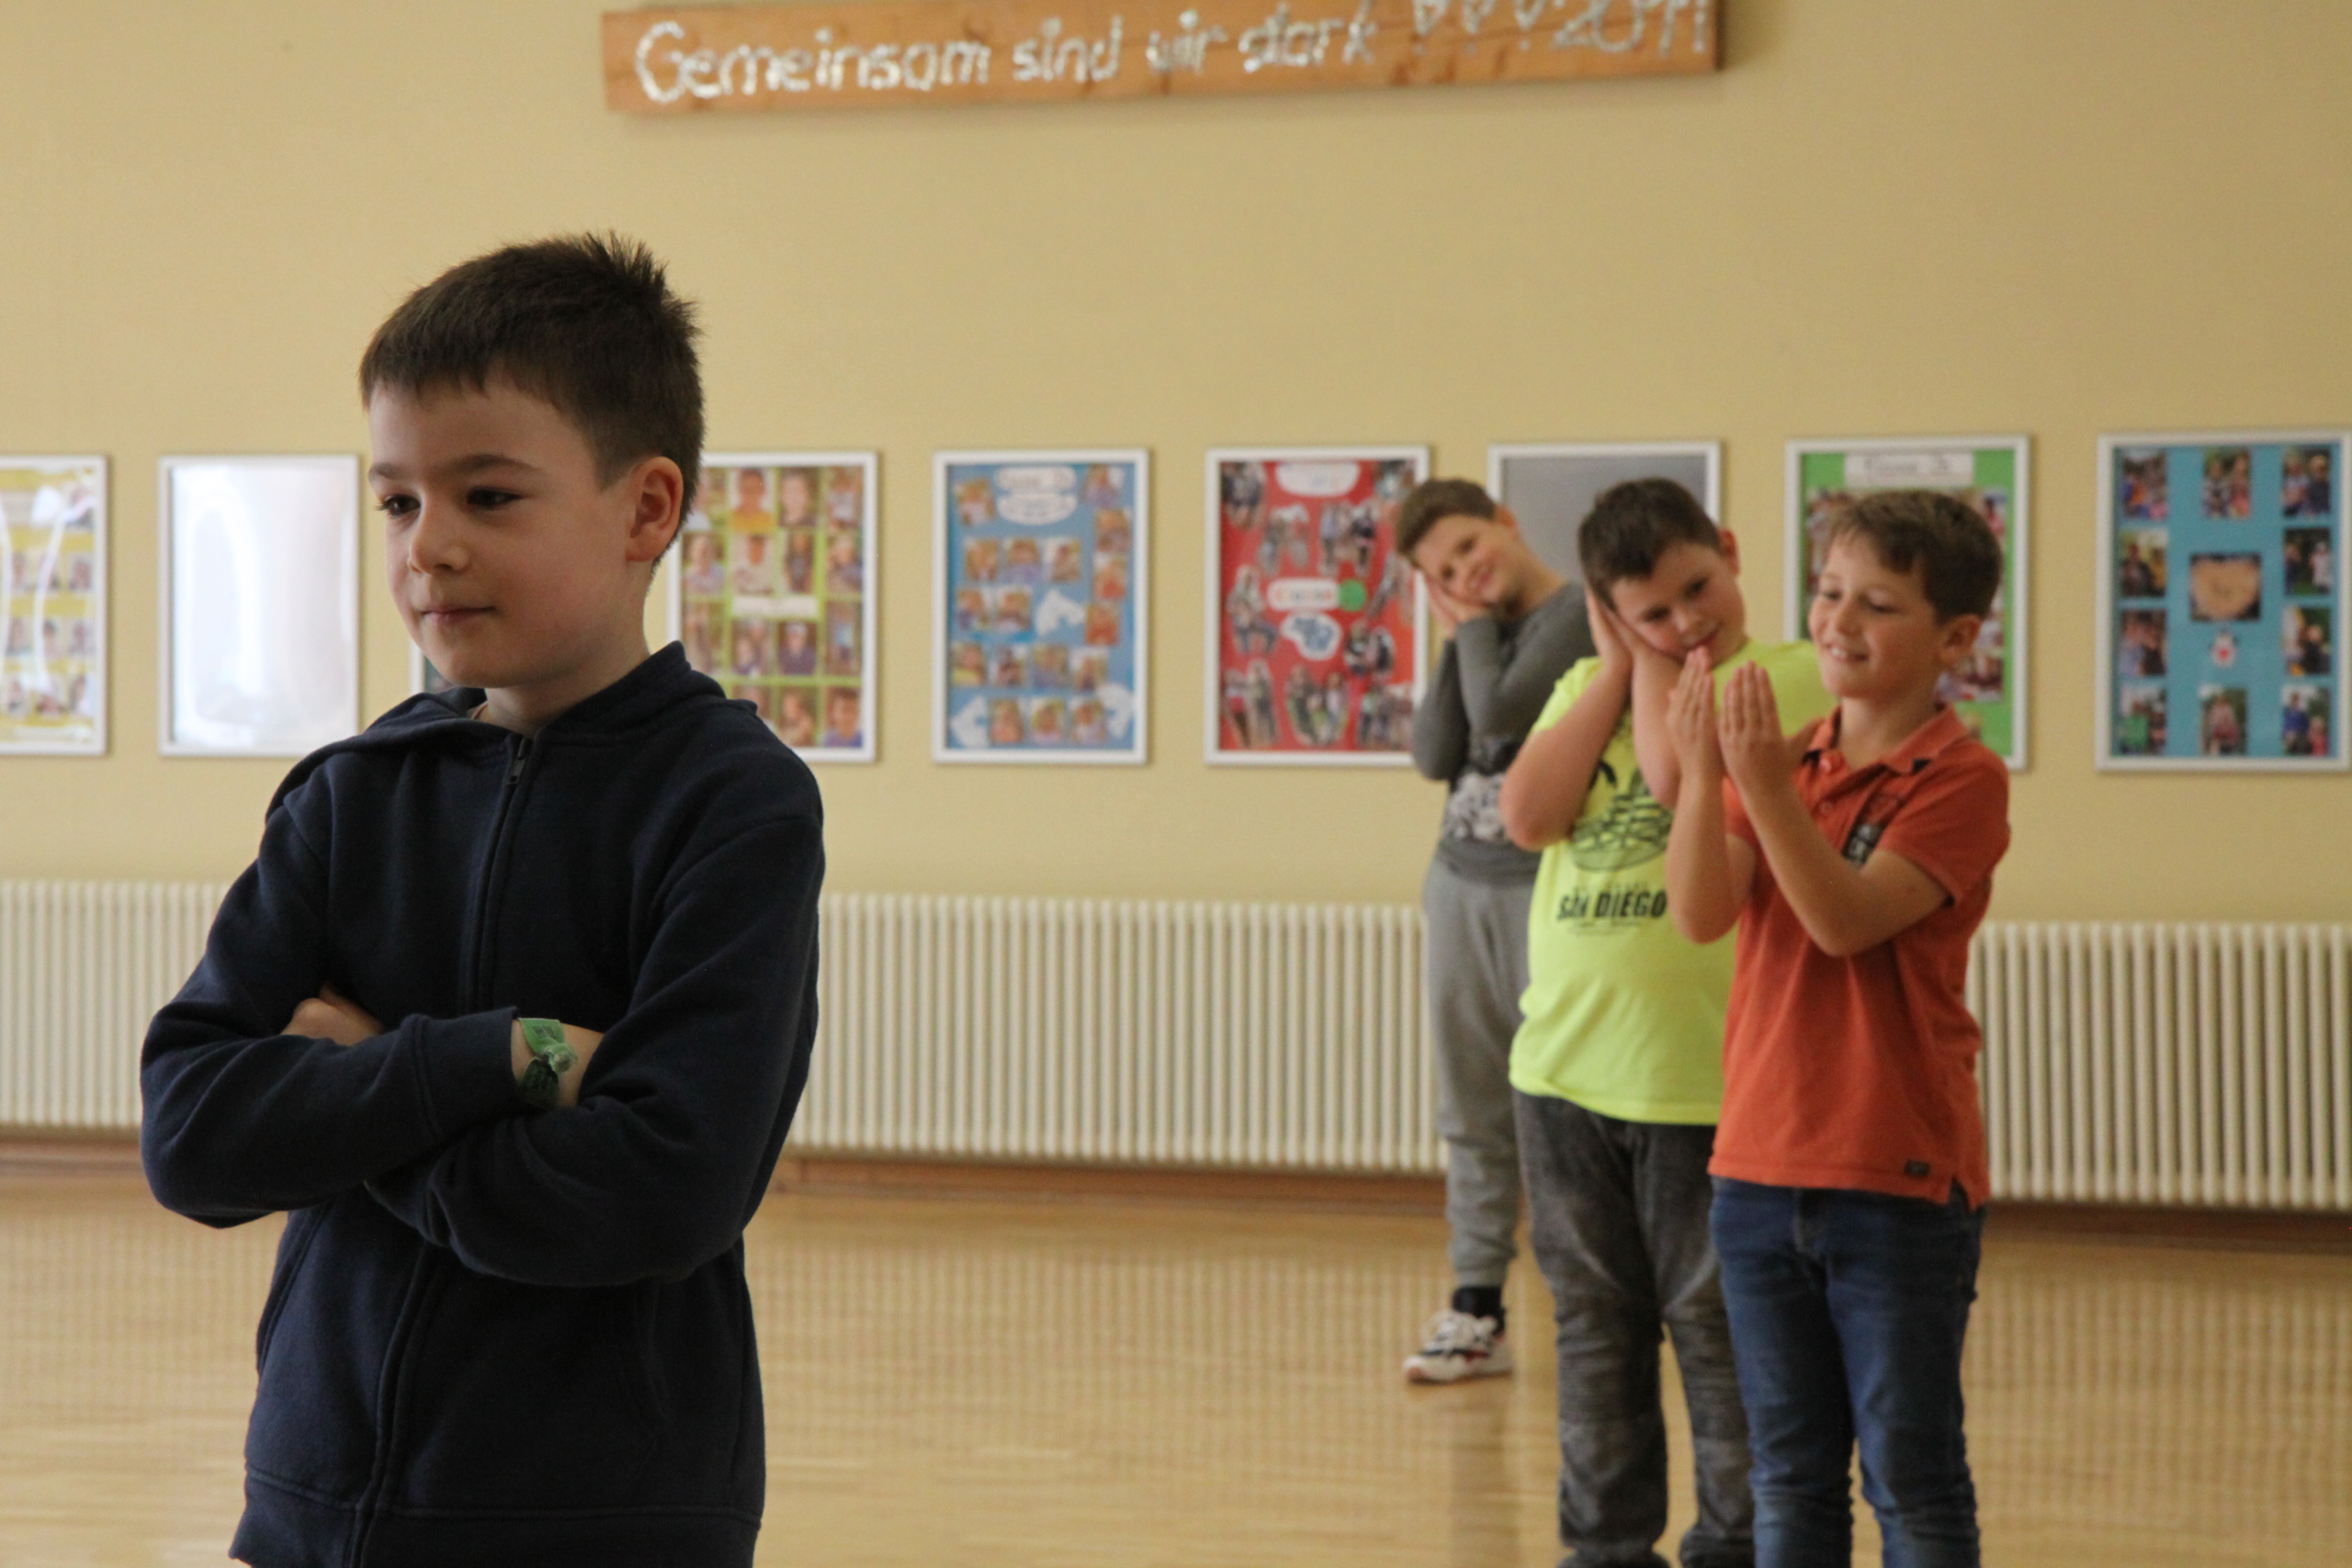 Kinder proben in der Schule ein Theaterstück. Ein Junge mit verschränkten Armen befindet sich links im Bild. Rechts stehen drei weitere Jungs und formen mit den Händen ein Kissen unter ihrem Kopf.